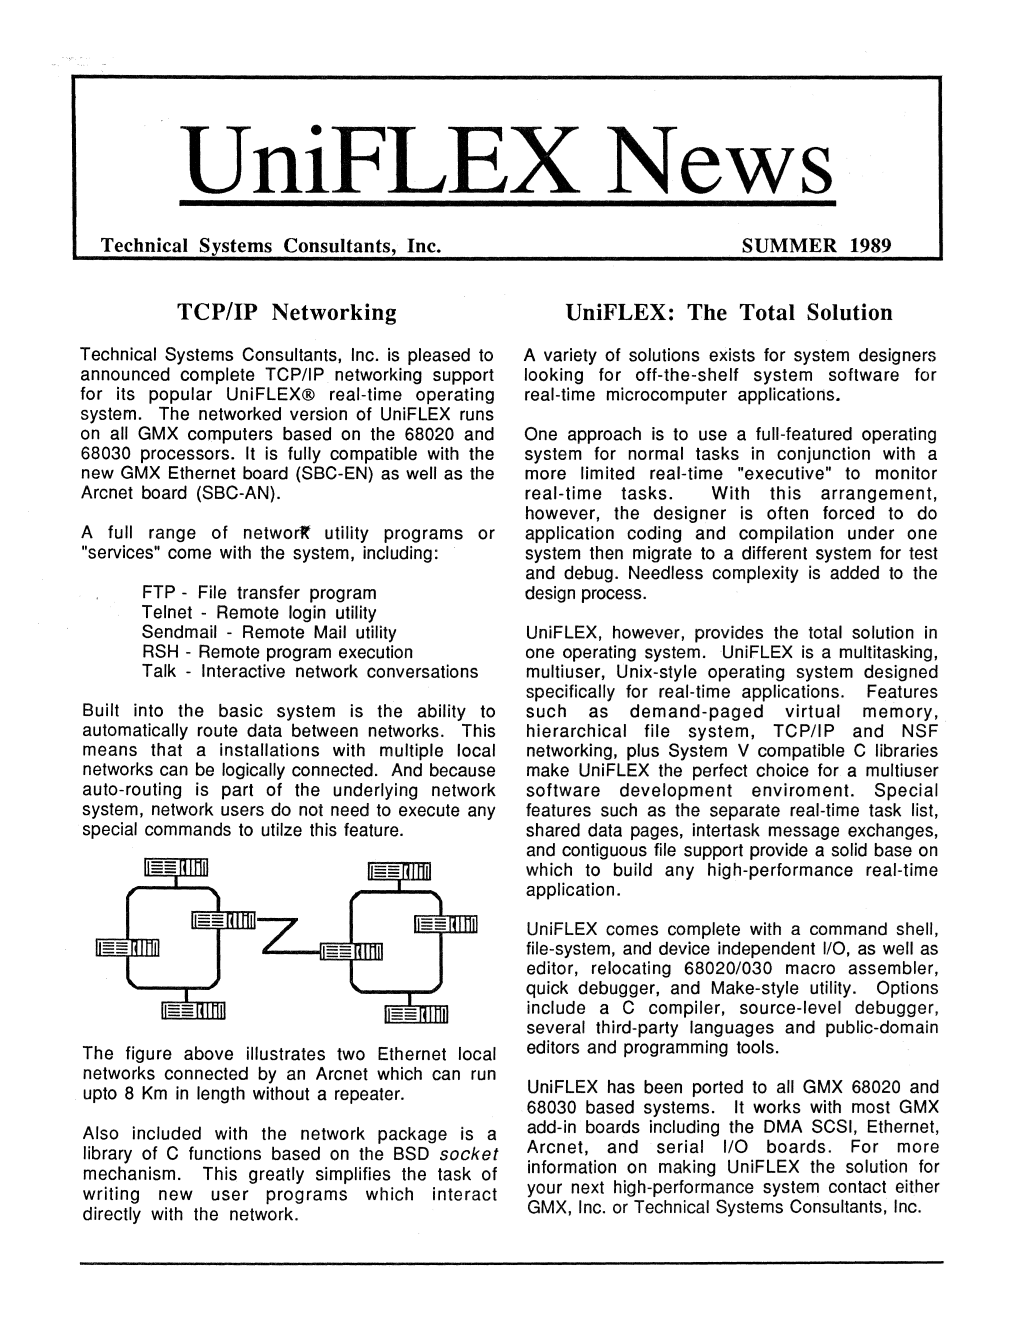 Uniflex News